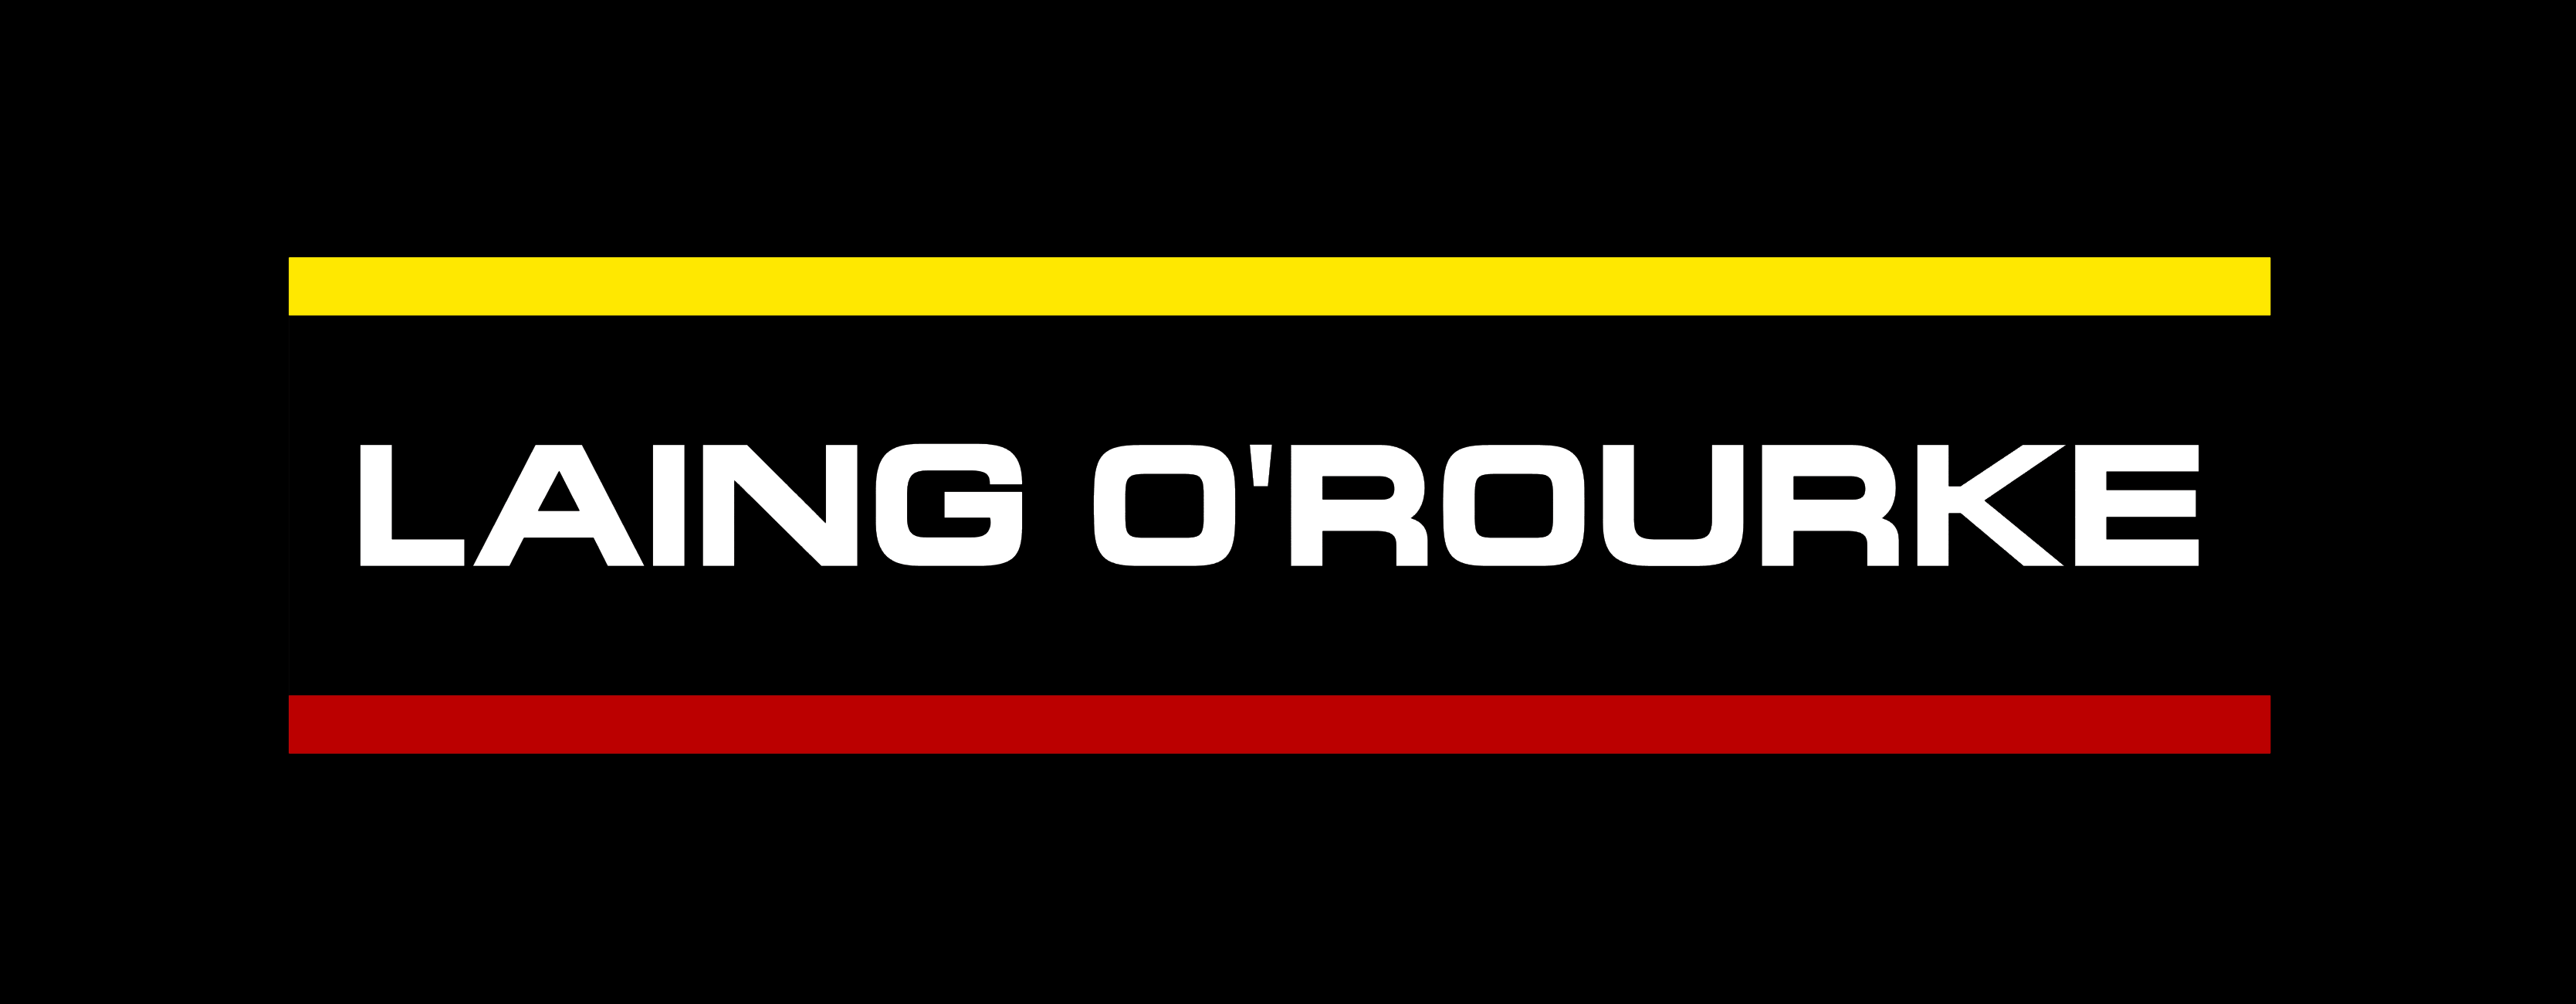 Laing O'Rourke logo, logotype